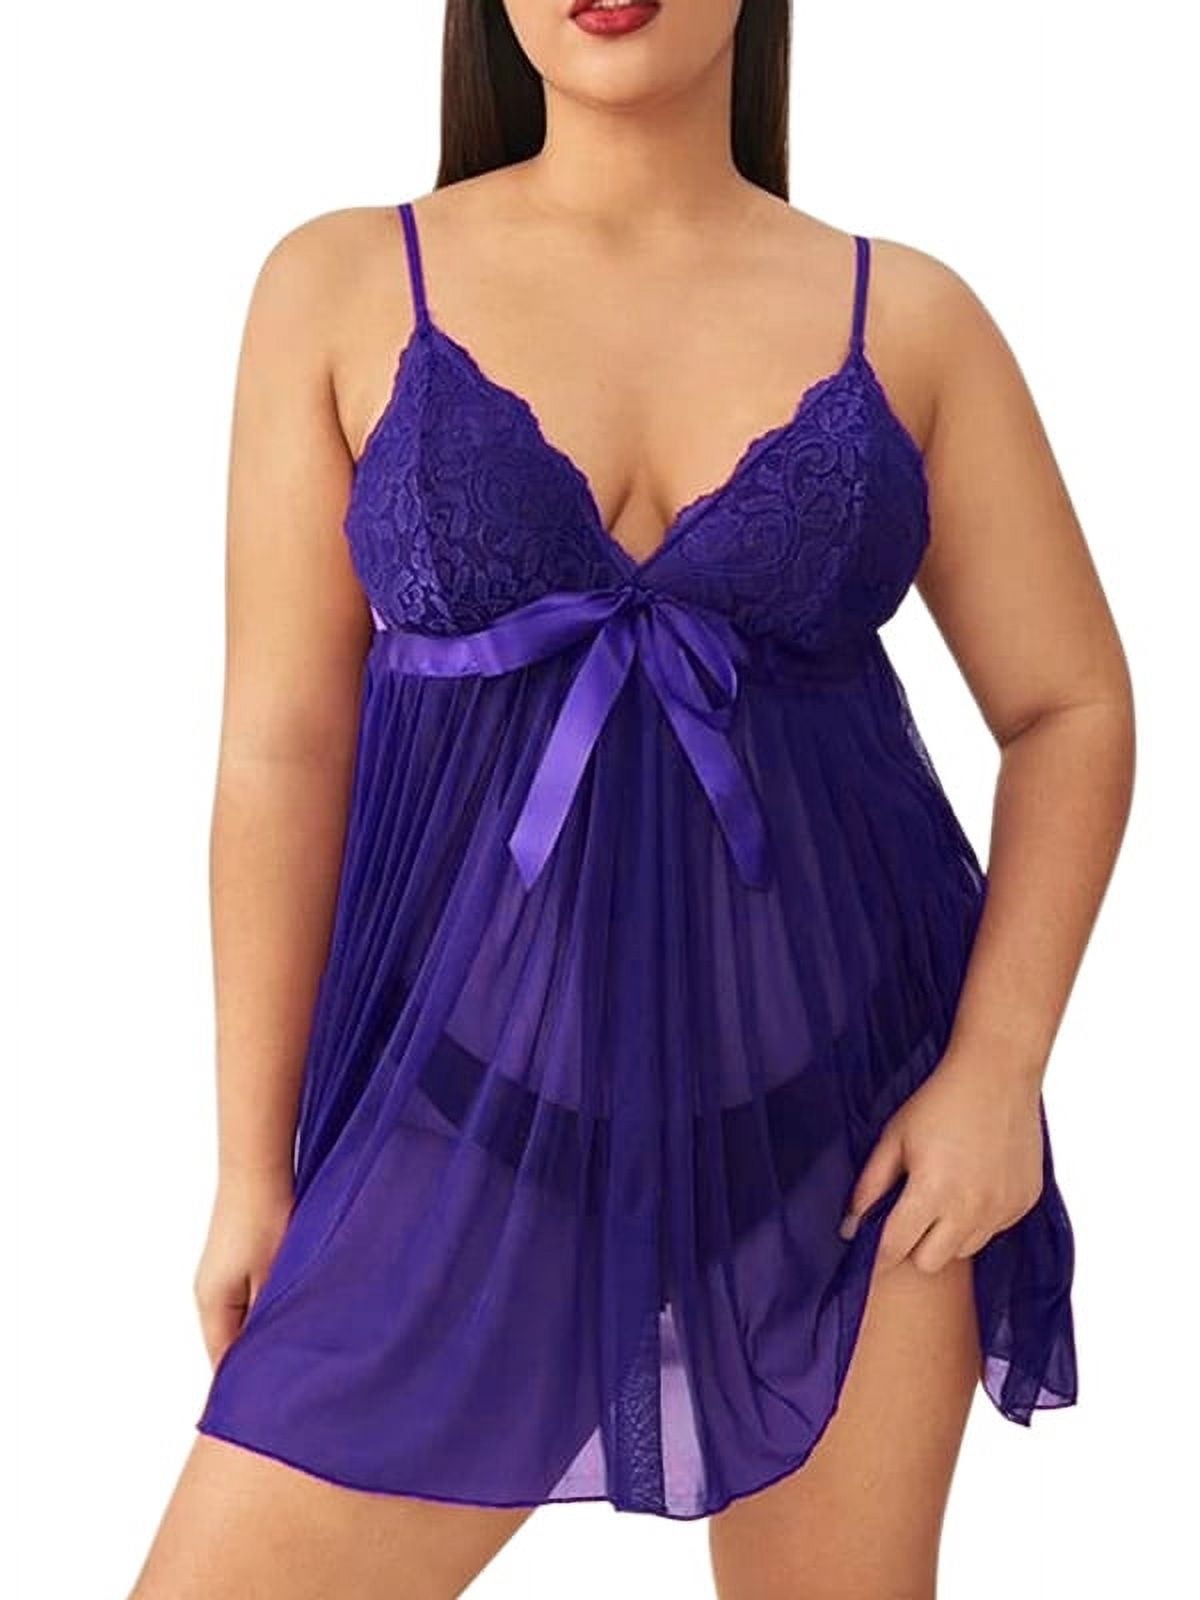 Skksst Womens Sexy Lace Nightdress Underwear Babydoll Lingerie